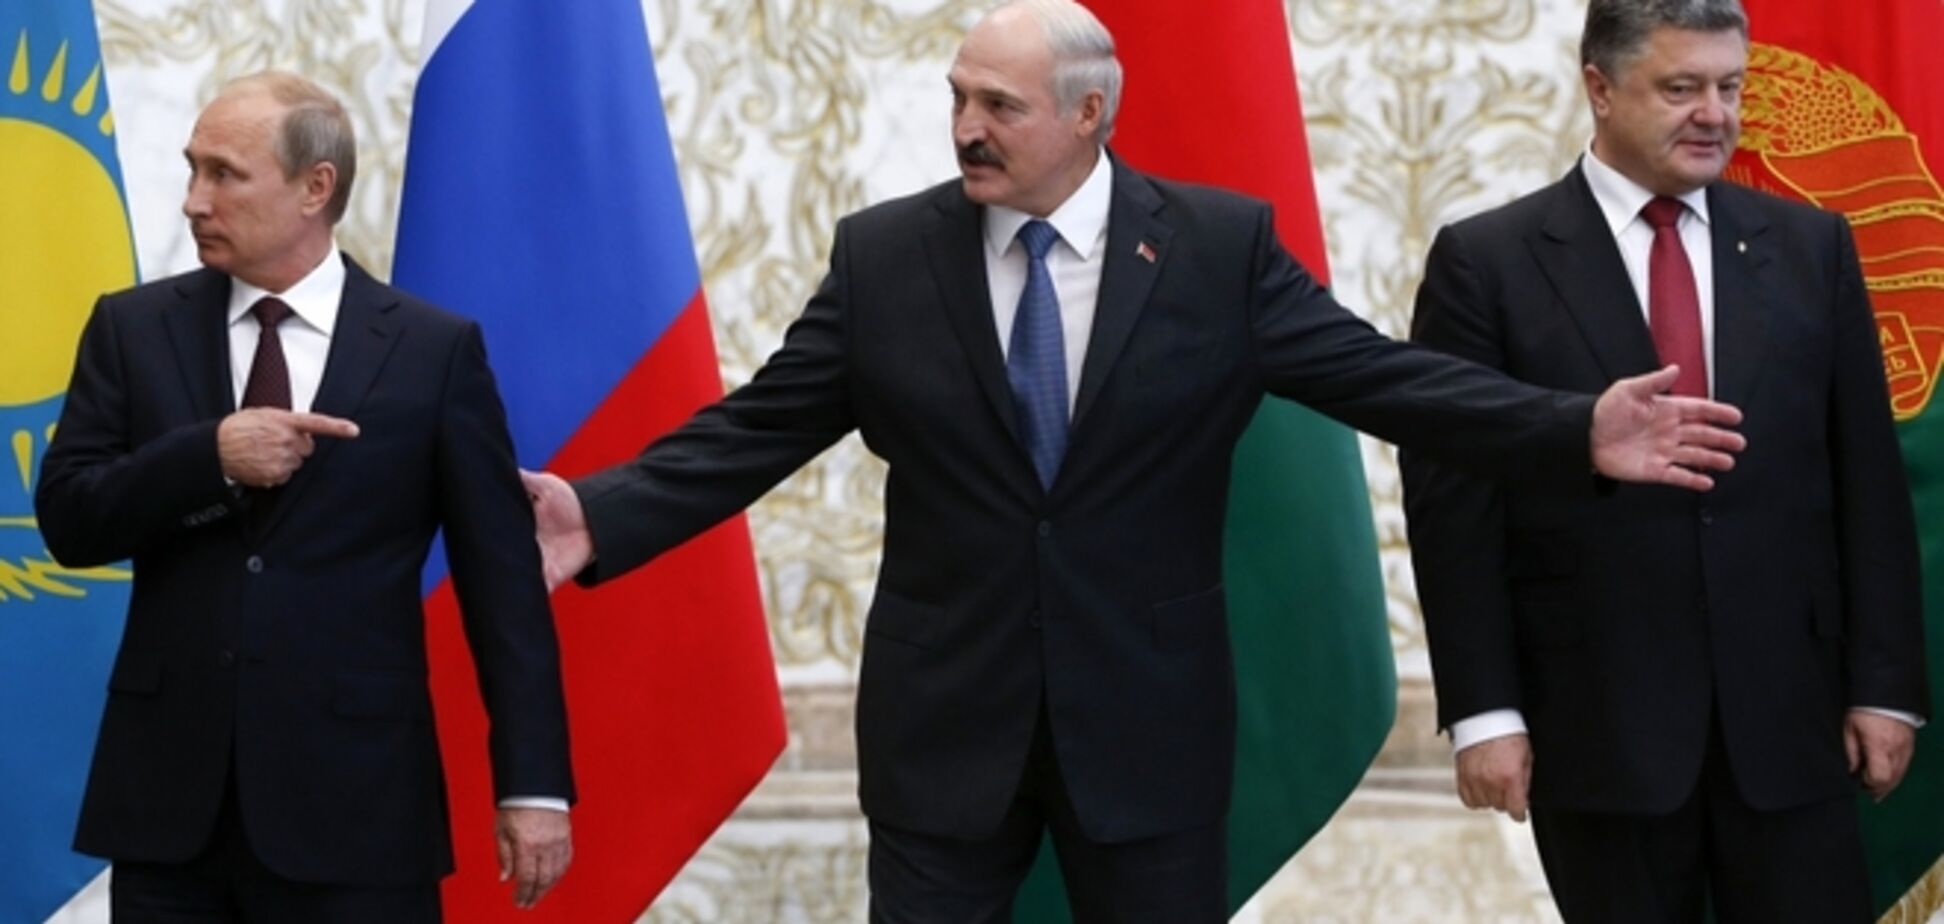 Путин с Порошенко встретятся снова уже 28 августа - СМИ